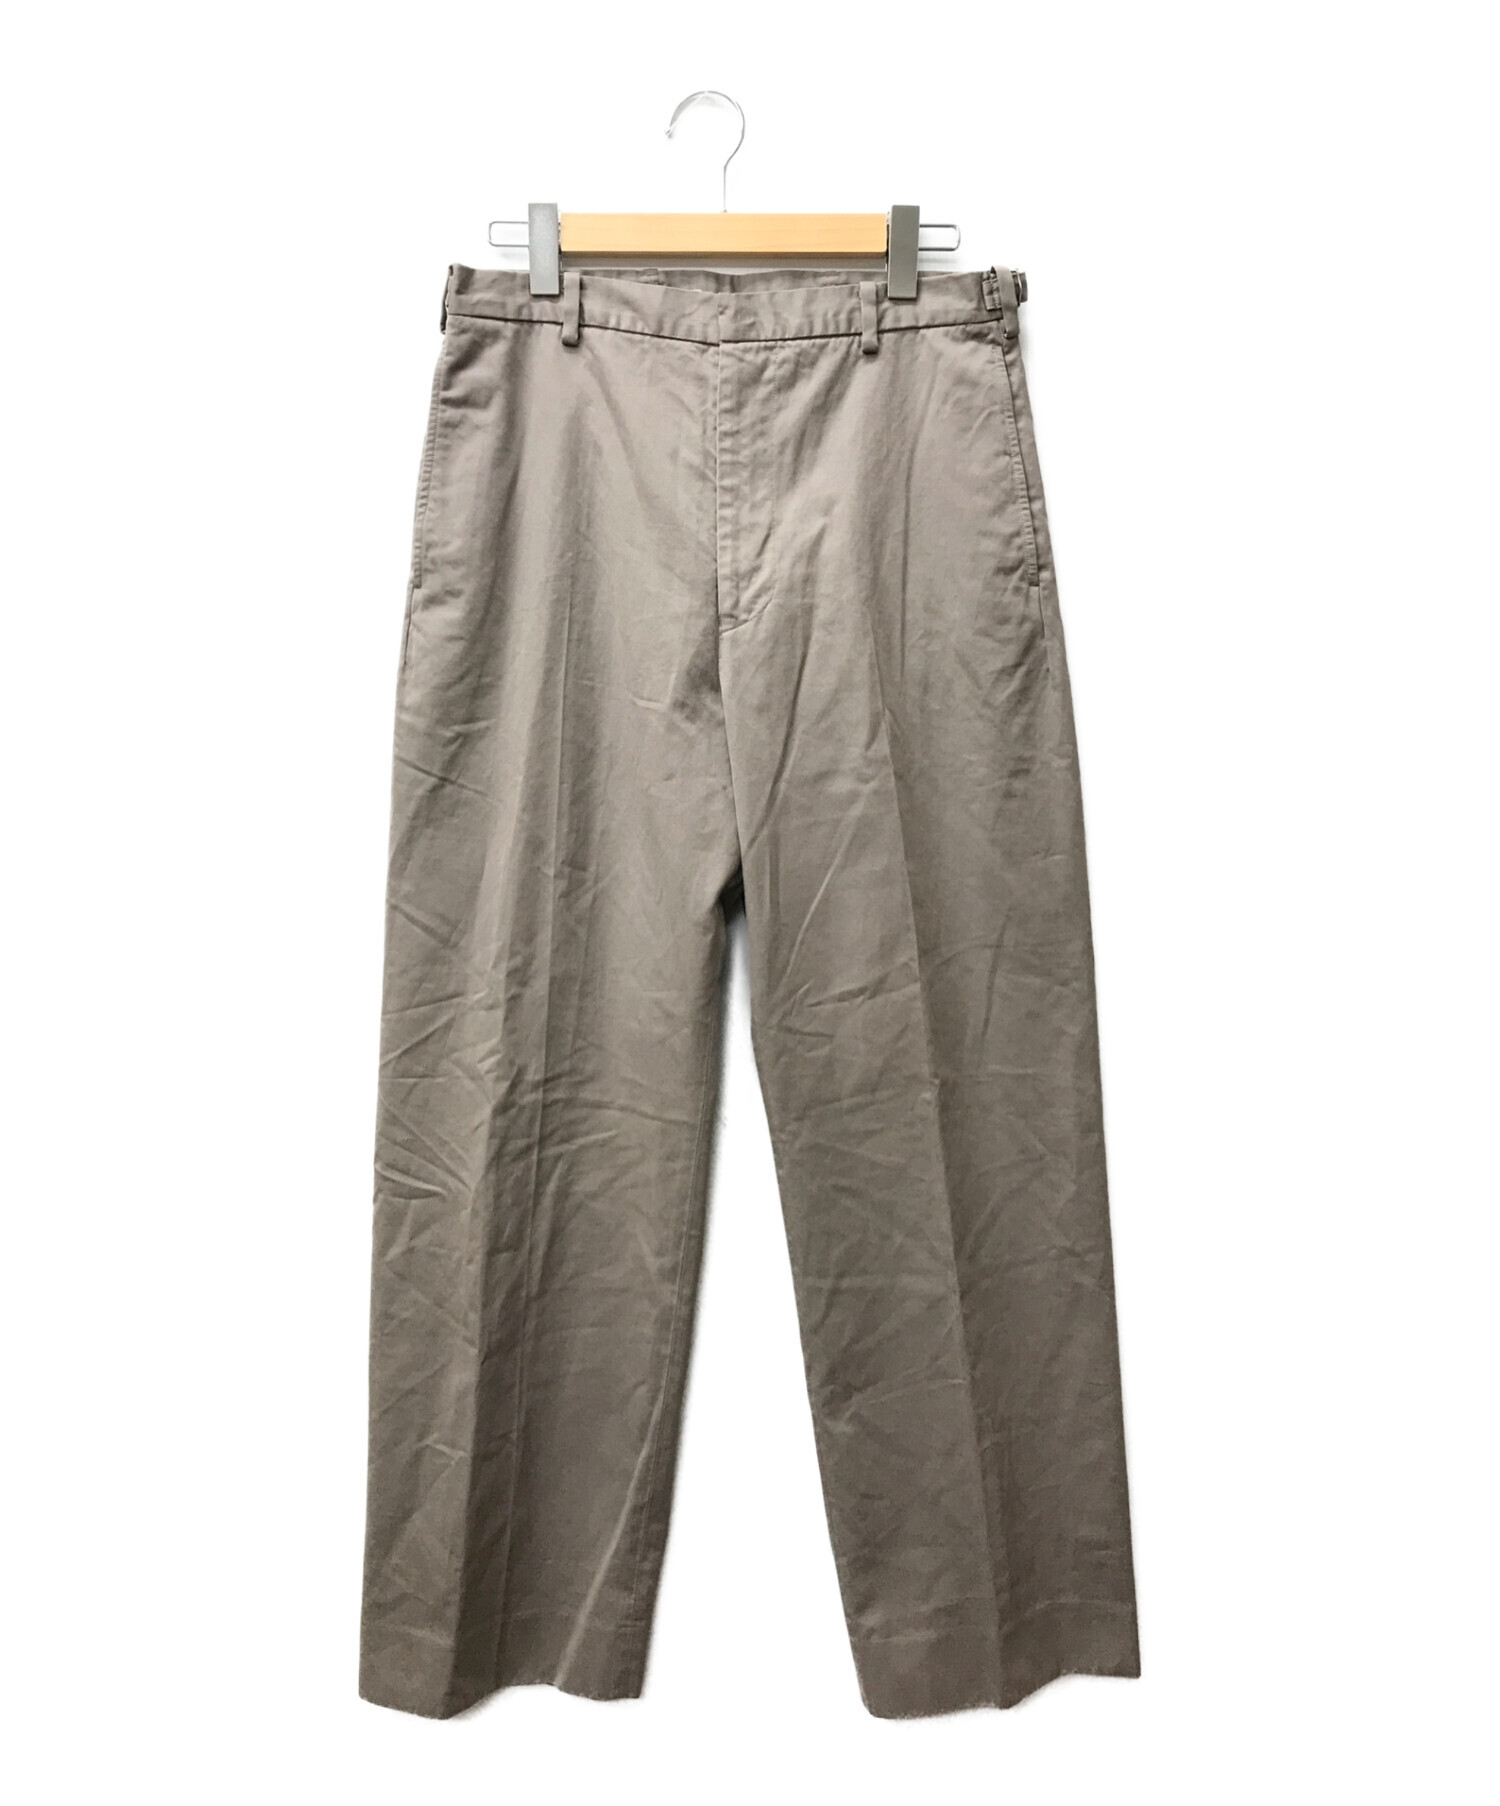 KAPTAIN SUNSHINE (キャプテンサンシャイン) Garment Dyed Scottish Sideseemless Trousers  ブラウン サイズ:W32